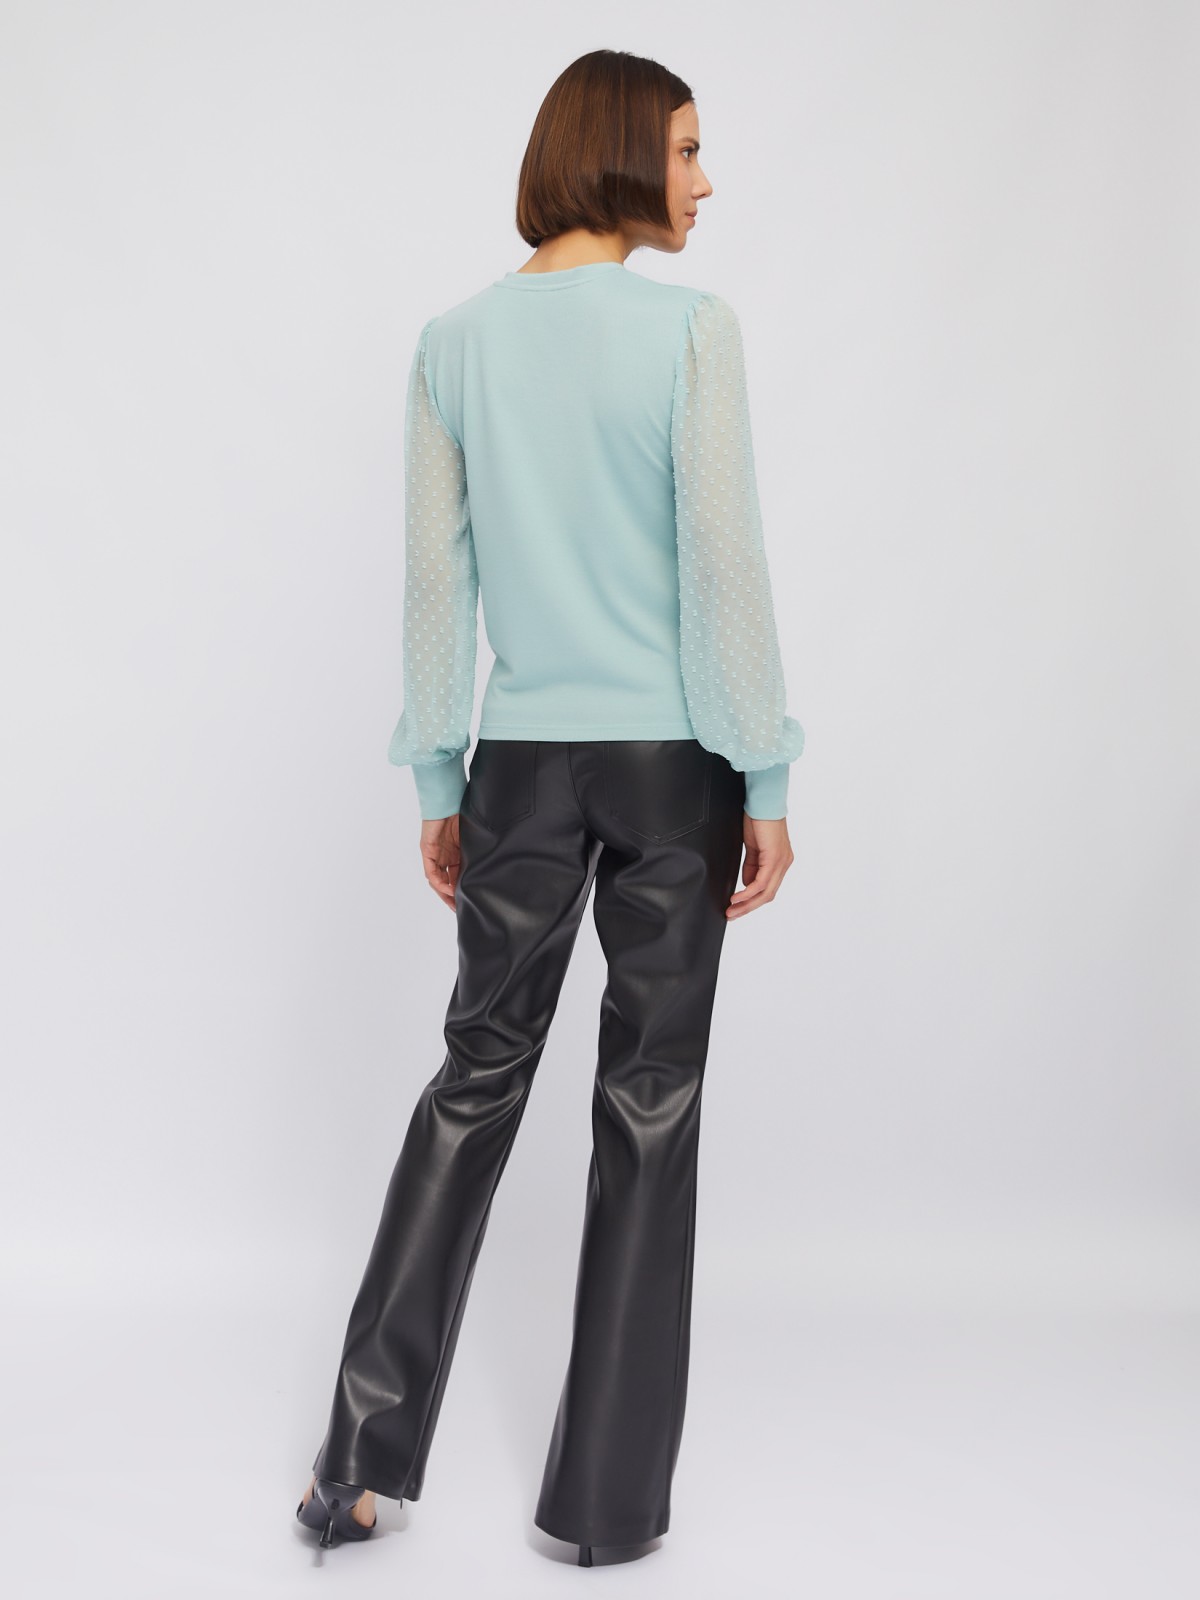 Трикотажный топ-блузка с акцентом на рукавах zolla 024113126023, цвет мятный, размер XS - фото 6